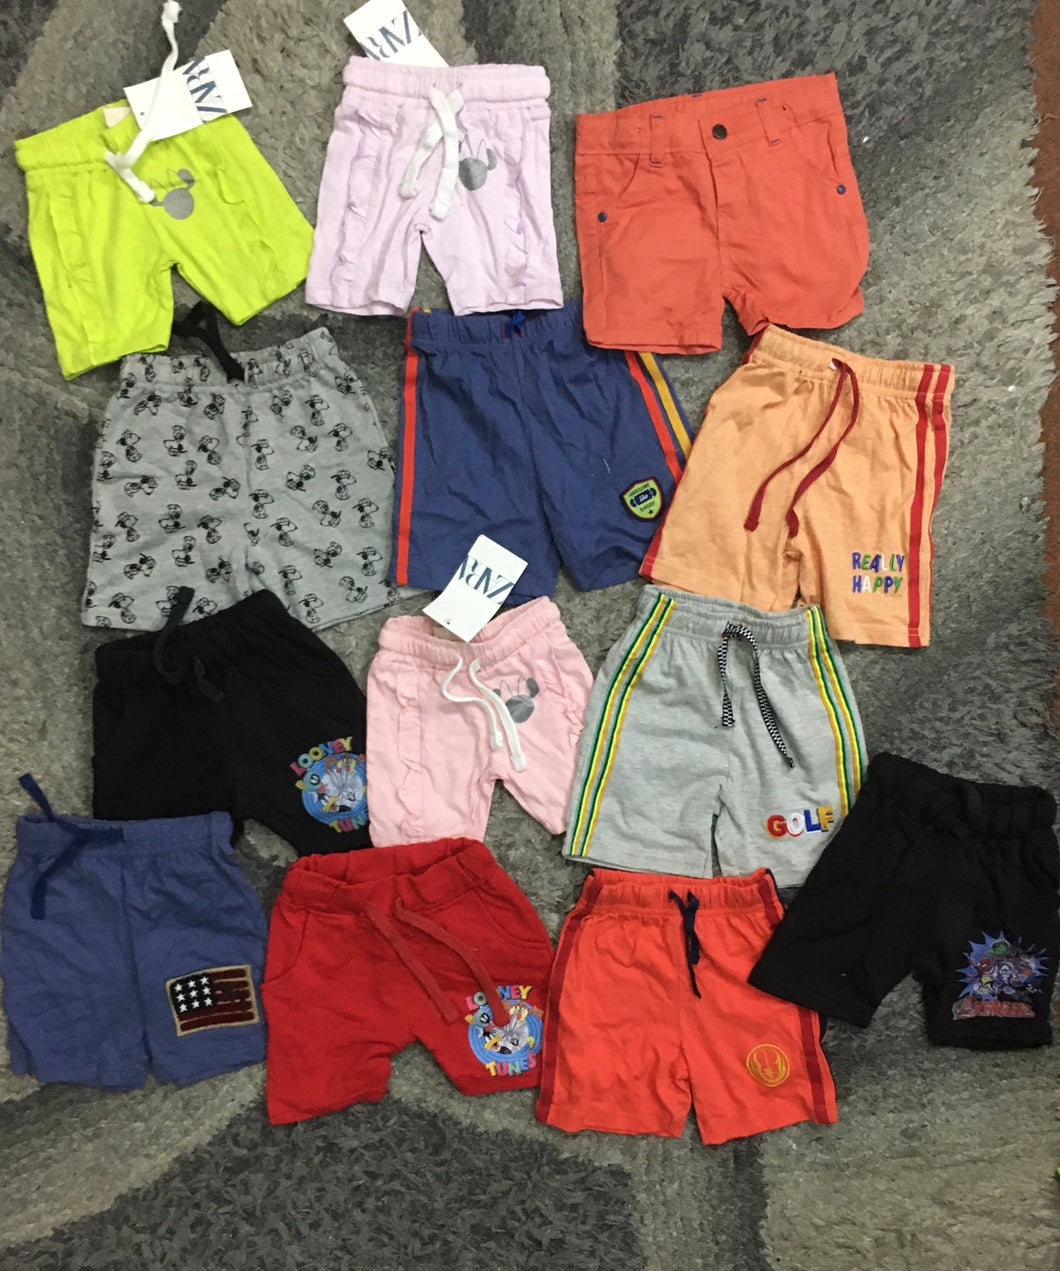 Kids Girls Boys Pack of 5 Branded Shorts (9-12M) (Random Colors)